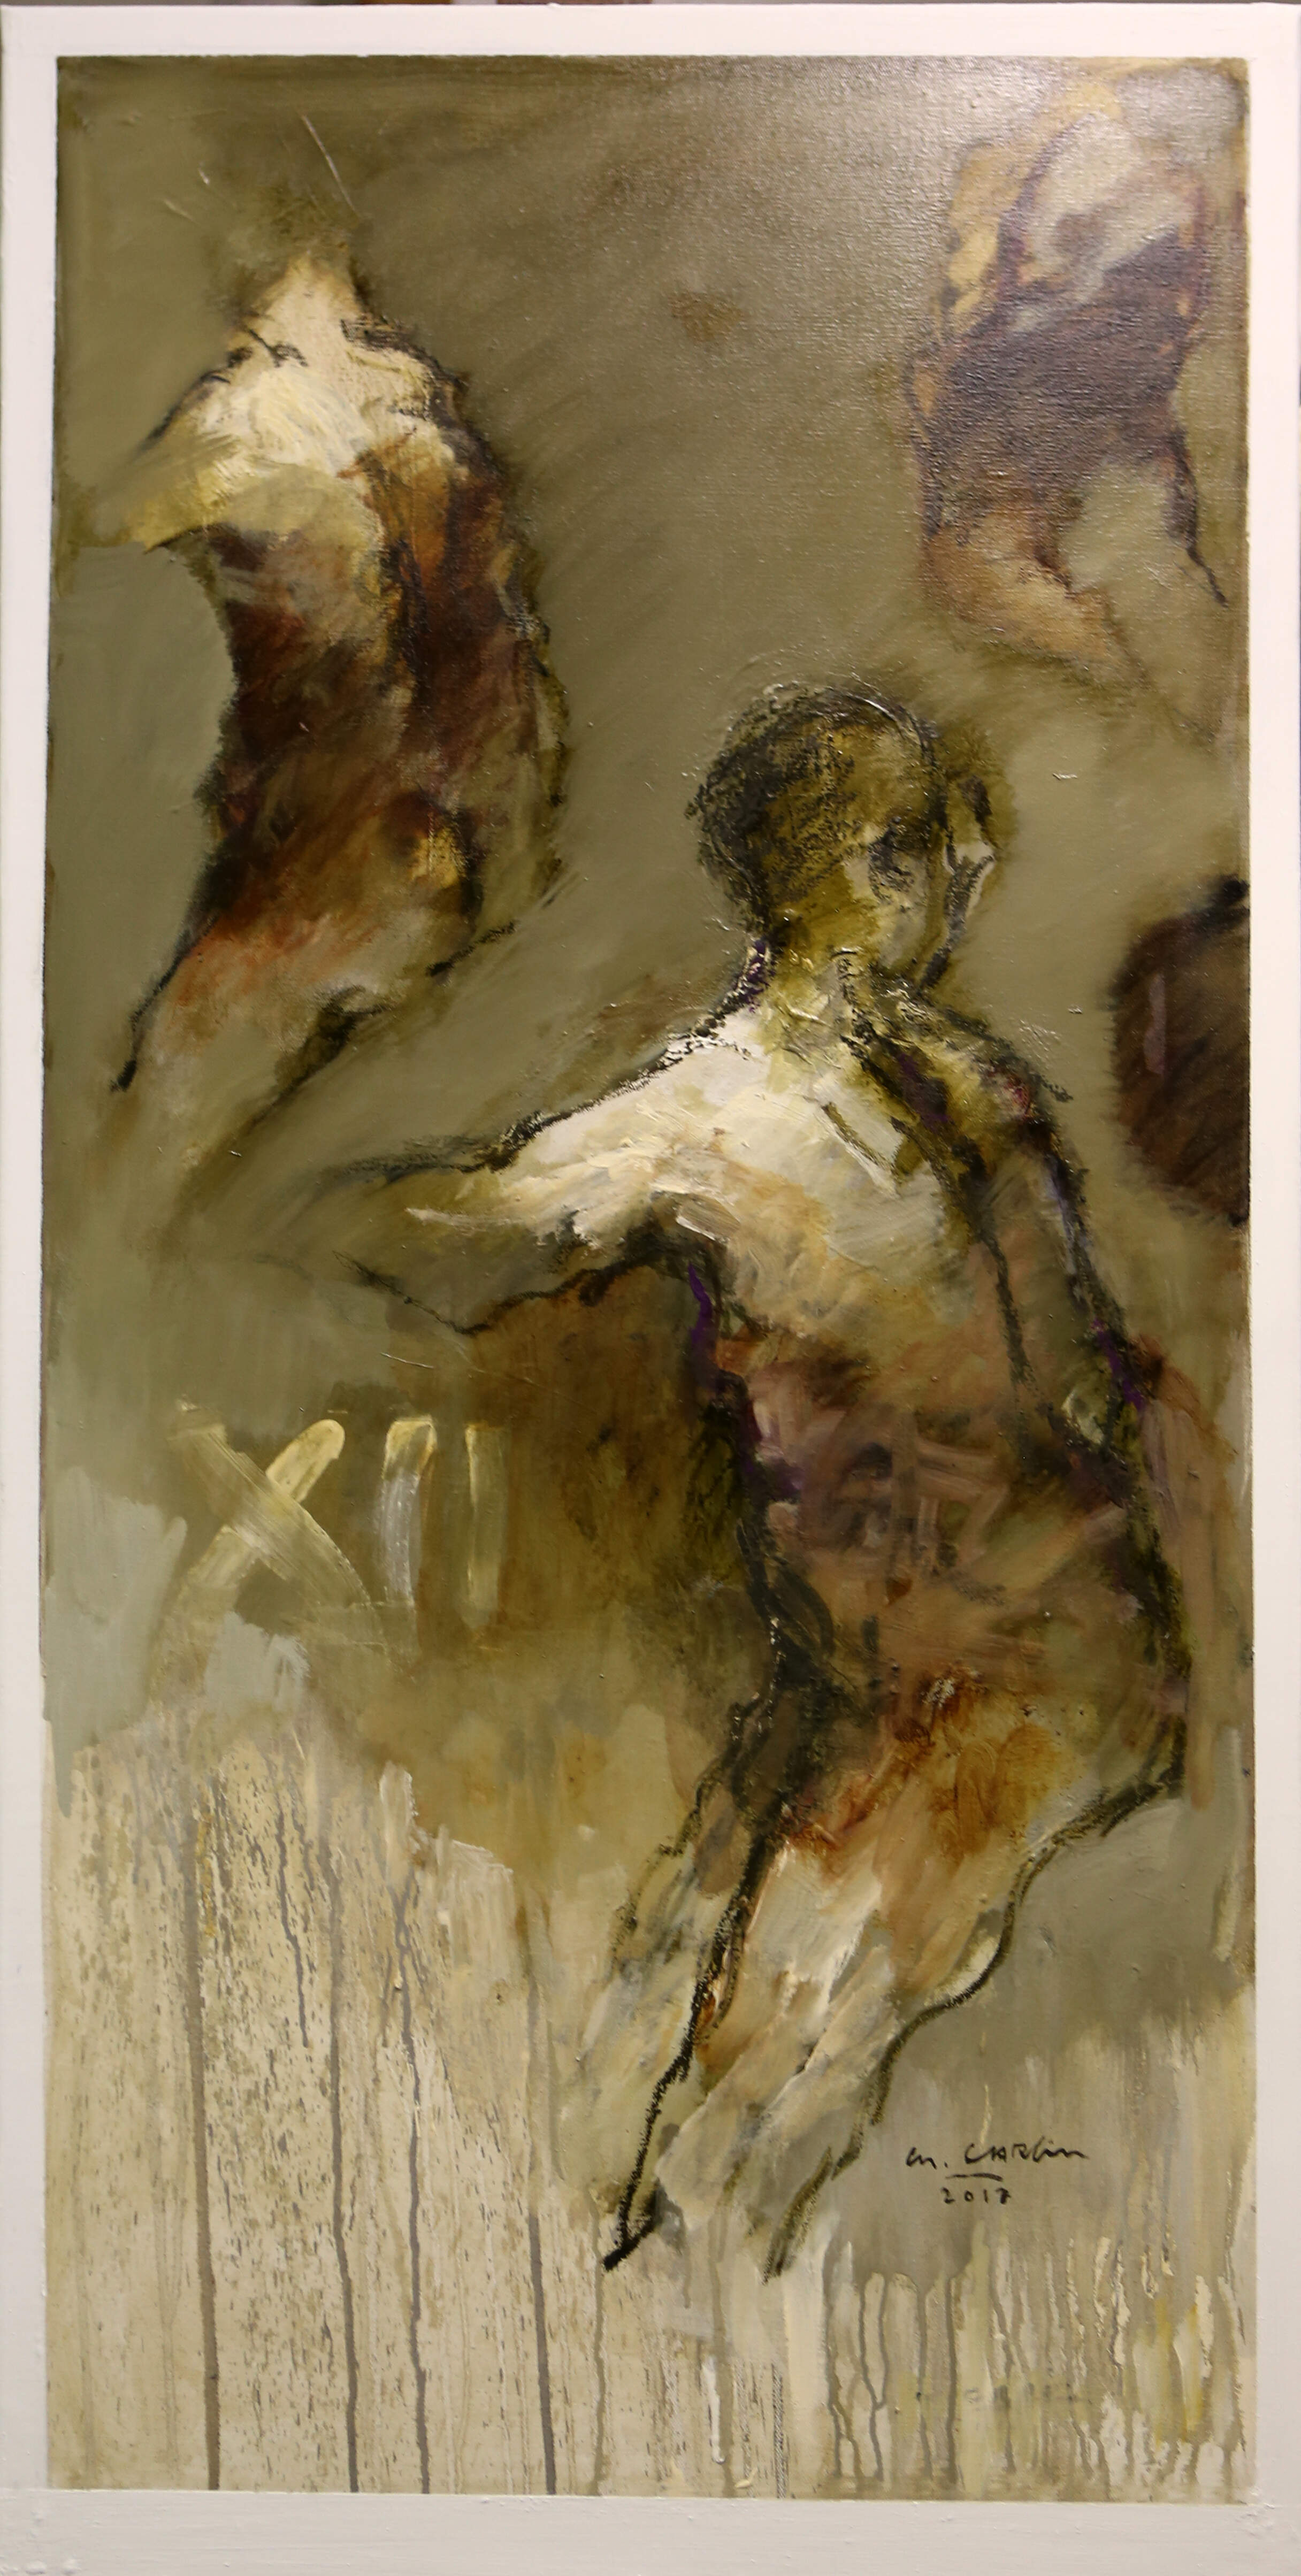 Maleri olie på lærred 80x80cm  kr.21.000,- af kunstner Michel Carlin